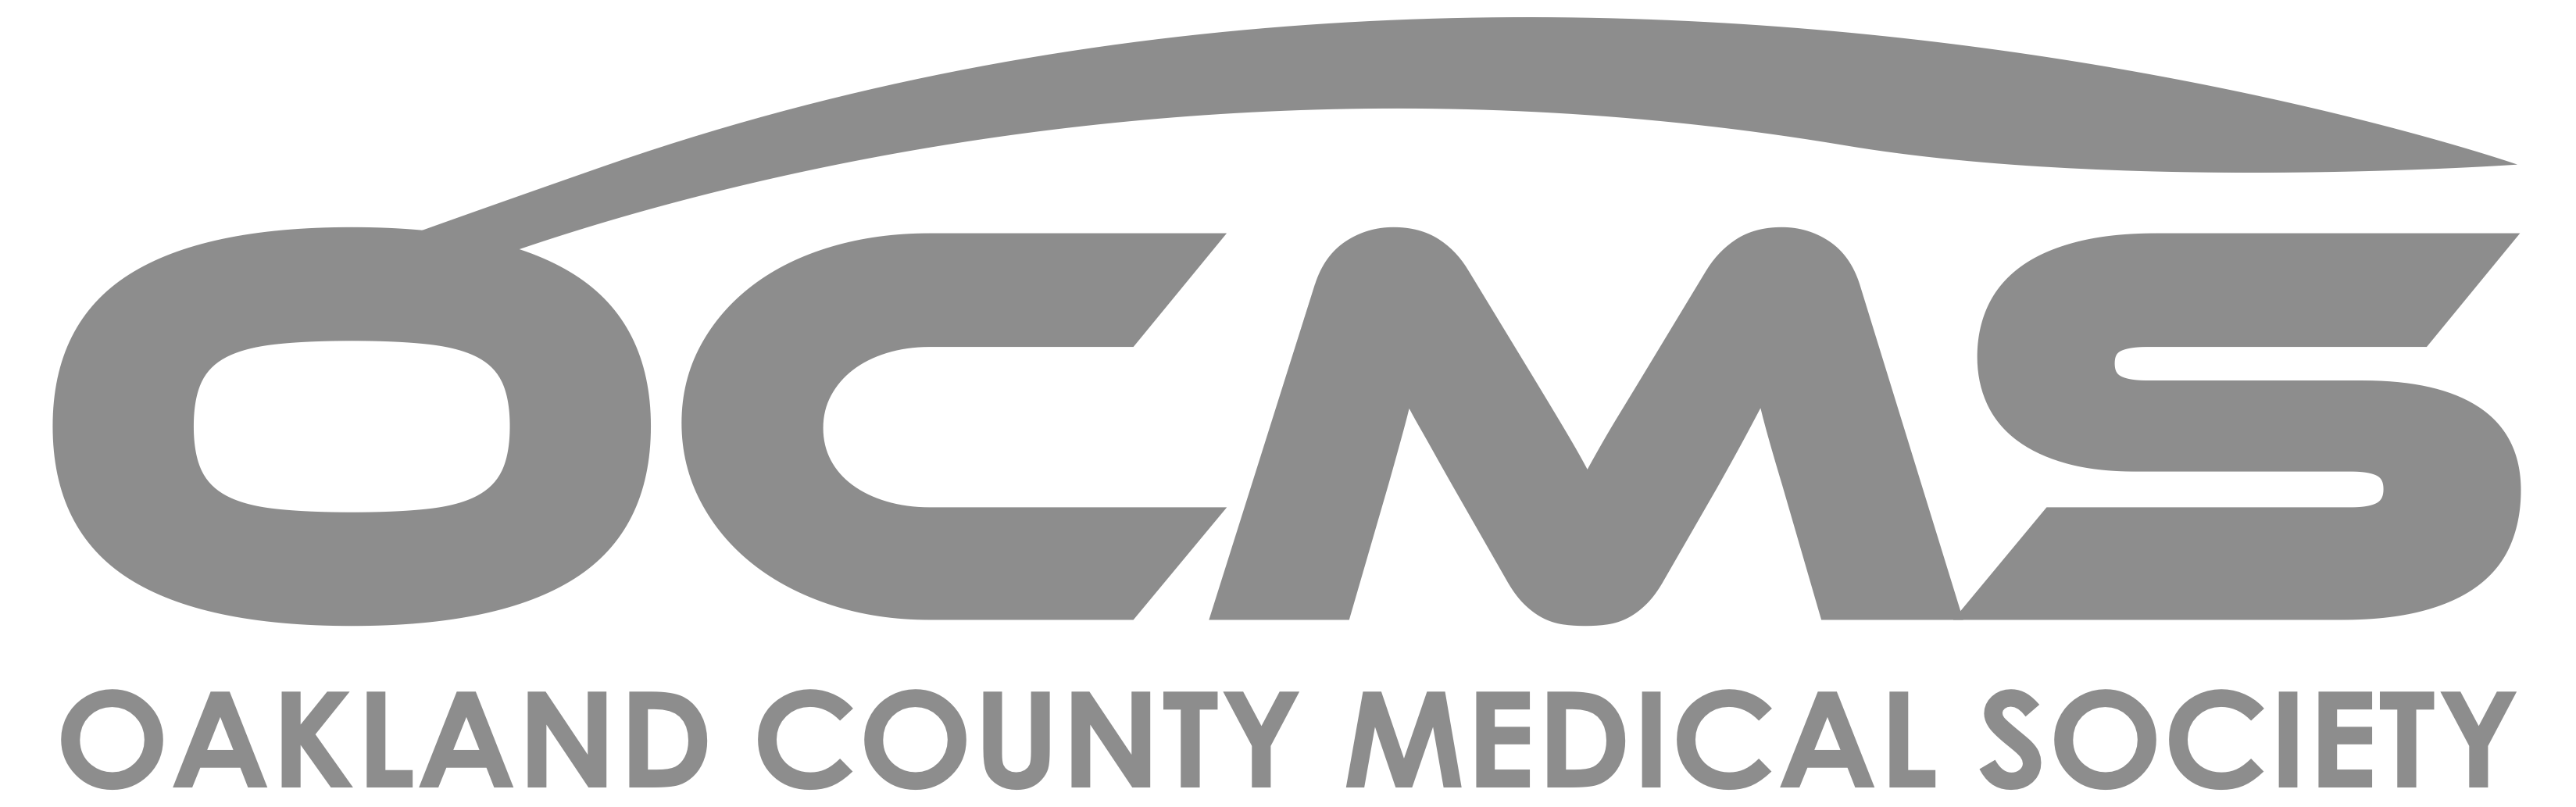 Oakland County Medical Society logo